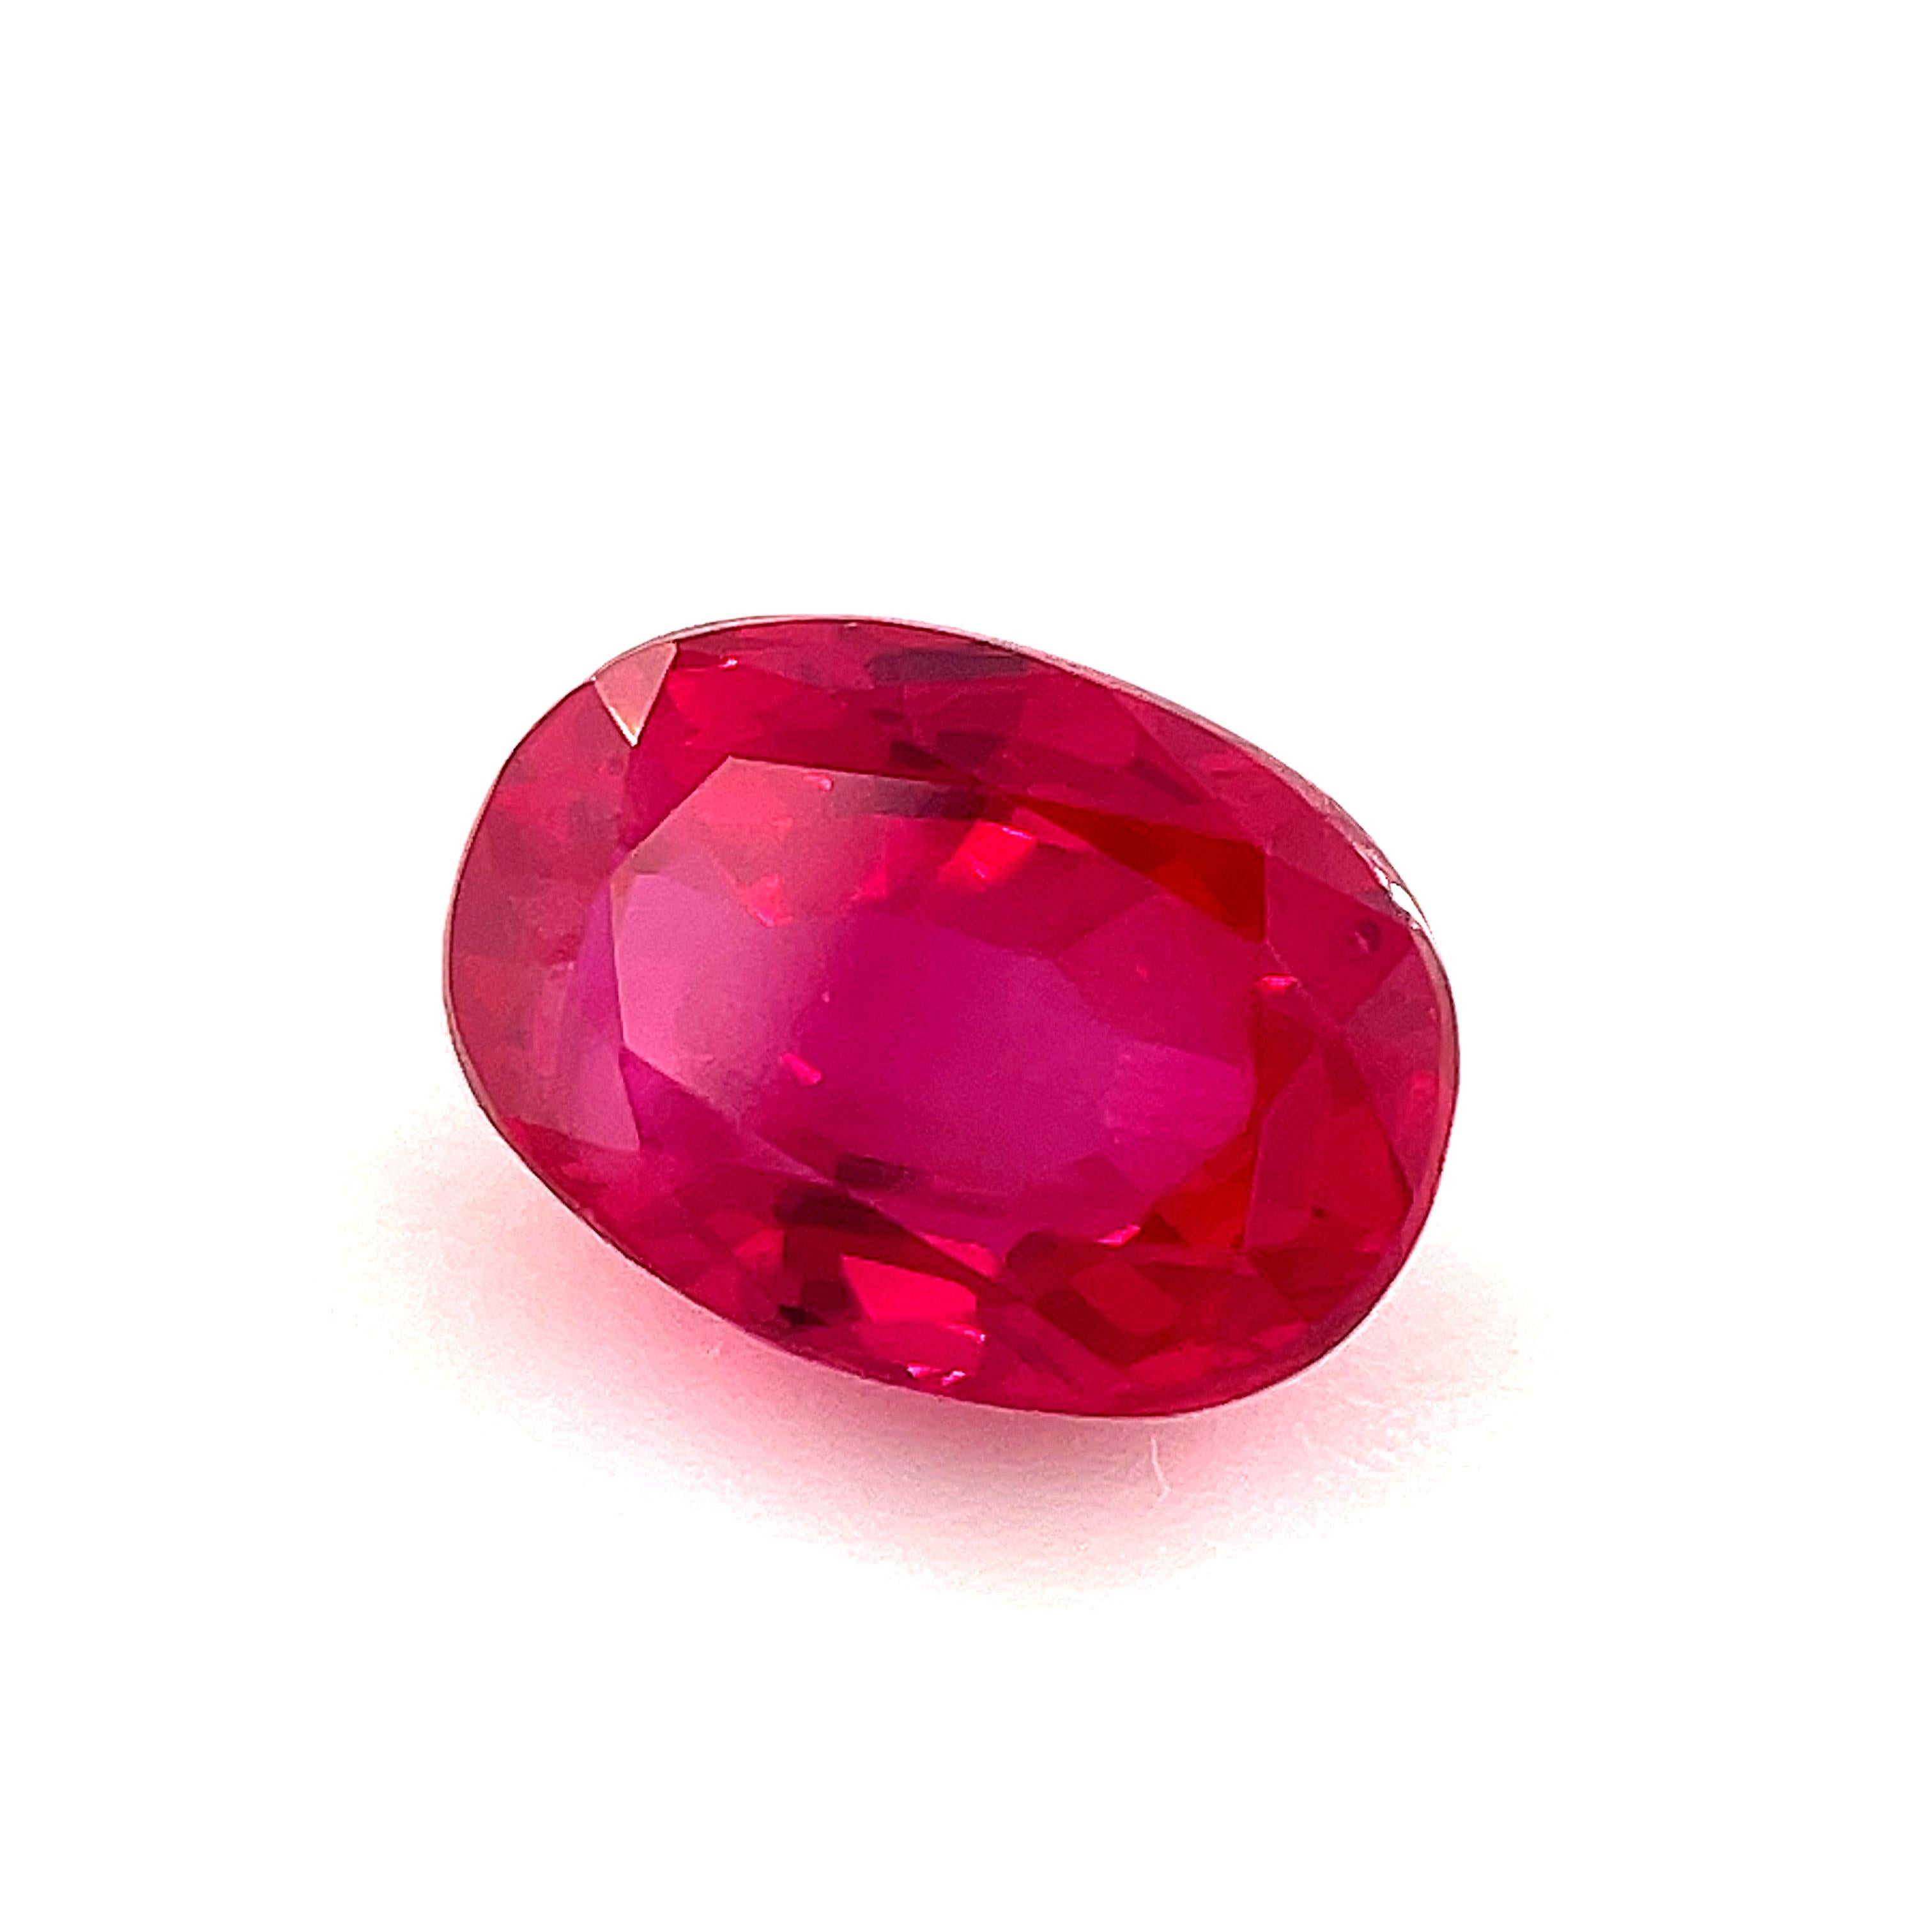 Dieser schöne, leuchtend rote Rubin würde einen spektakulären Ring abgeben! Er wiegt 0,92 Karat und hat eine leuchtende, fast elektrische kirschrote Farbe mit herrlichen rosafarbenen Reflexen. Es ist augenrein und ein echtes Schmuckstück! Dieser